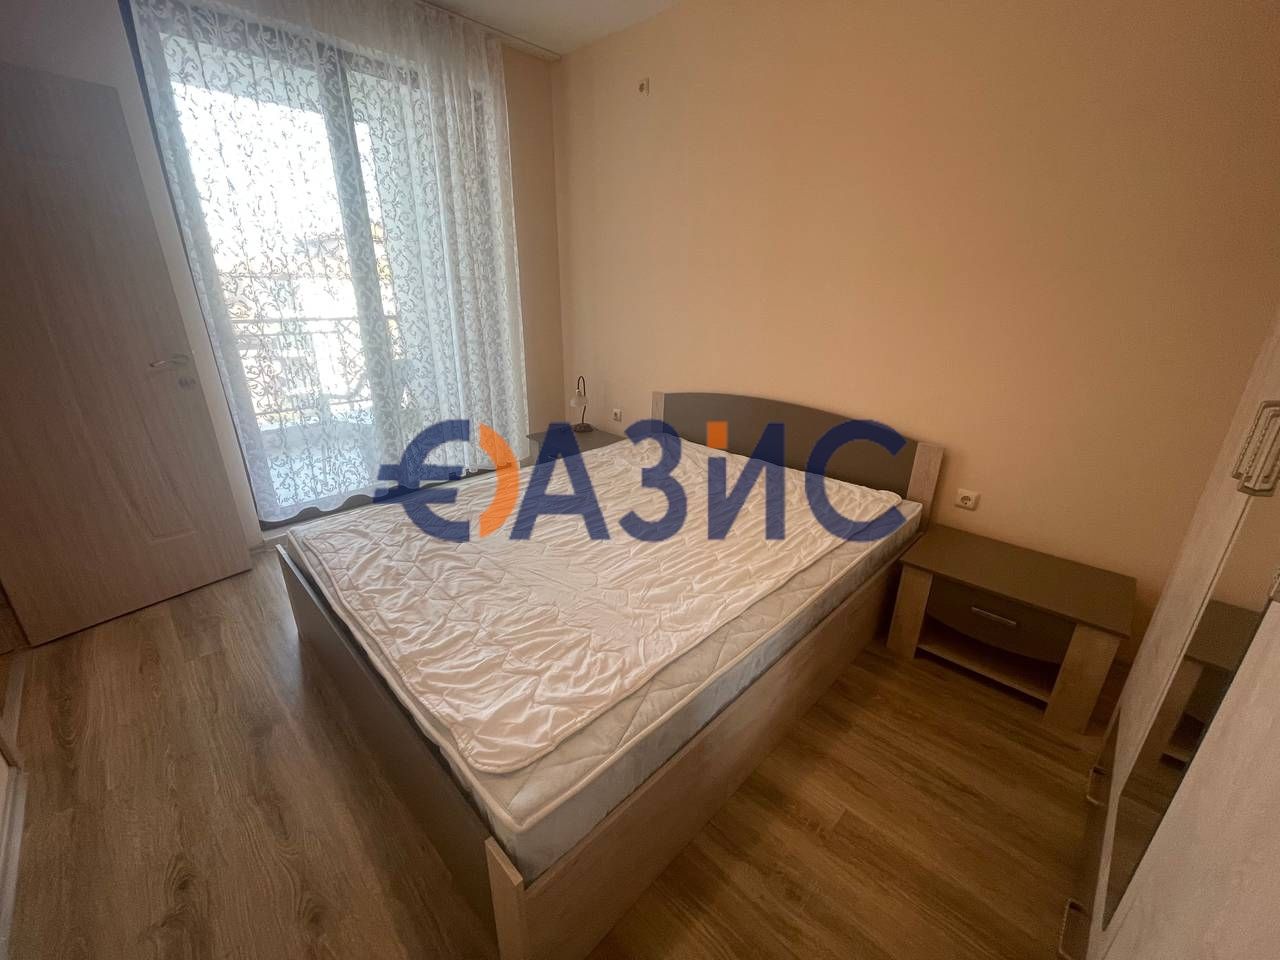 Апартамент с 1 спалня в комплекс Аполон 9, Несебър, България, 55 кв. м